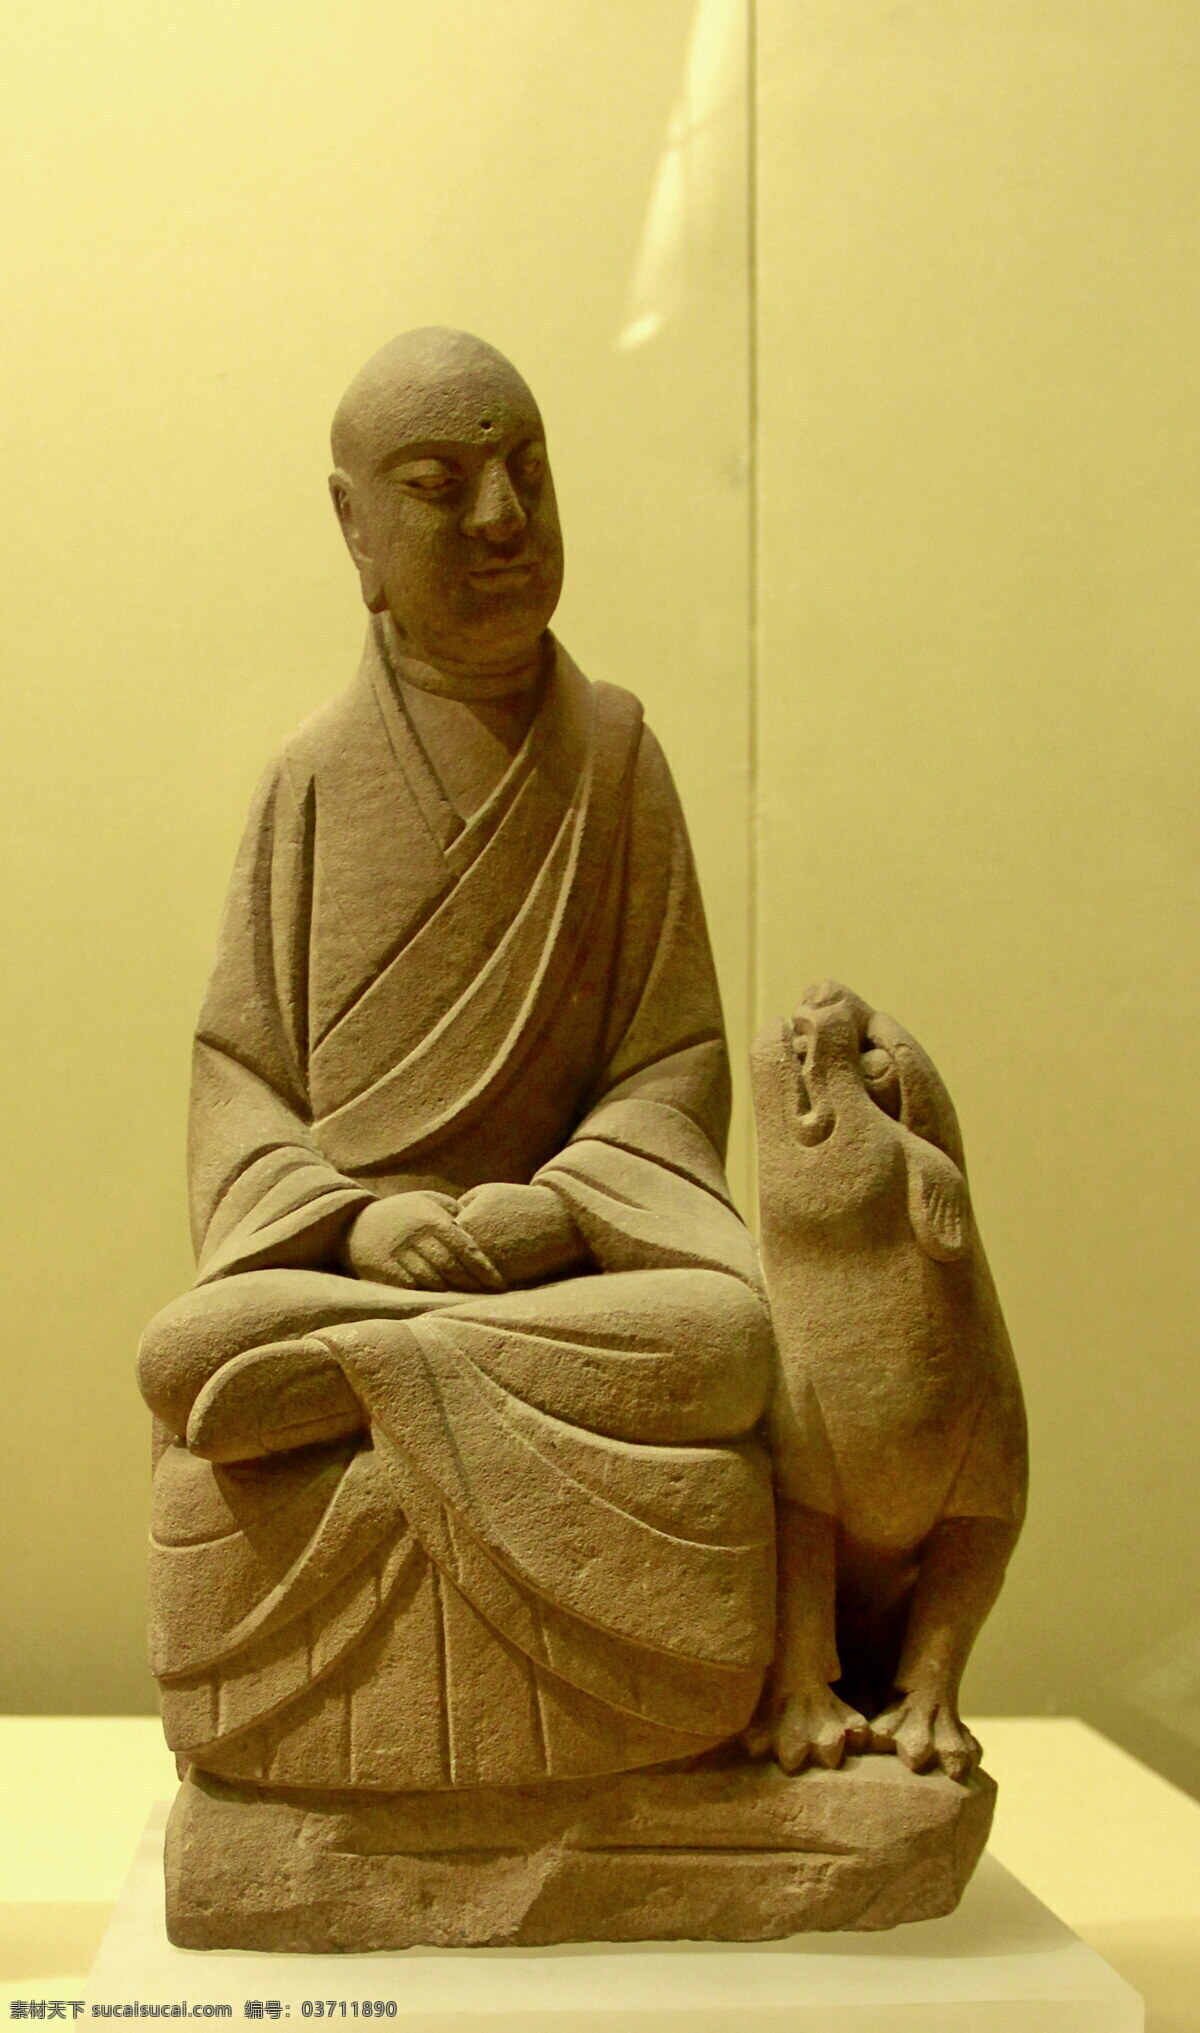 西安 历史博物馆 拊雏貌罗汉 历史博物物馆 文化 佛教 石像 西安文化 传统文化 文化艺术